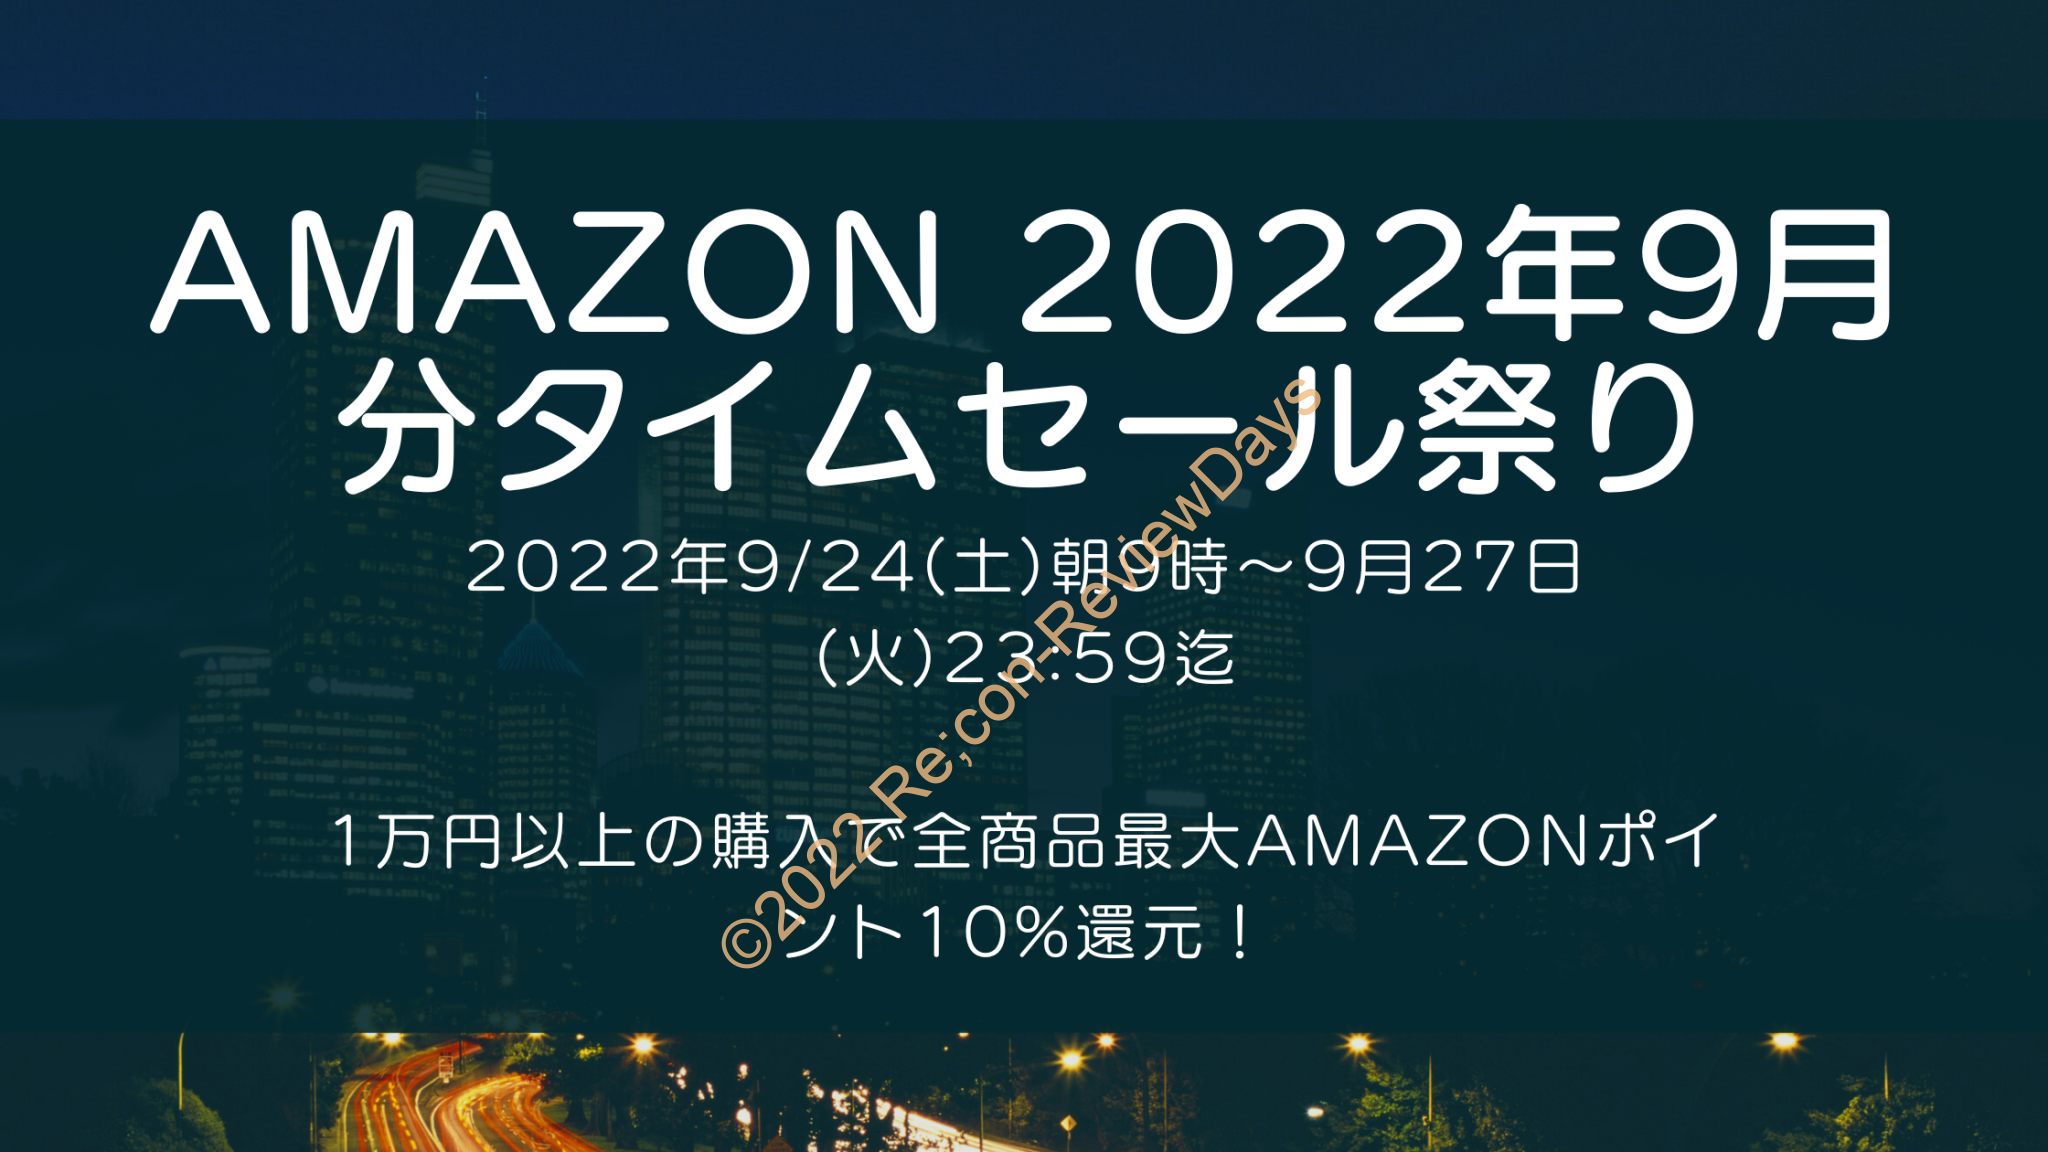 Amazonにて2022年9月実施分の「タイムセール祭り」を9月24日(土)朝9時から約4日間開催 #Amazon #アマゾン #セール #特価 #タイムセール #タイムセール祭り